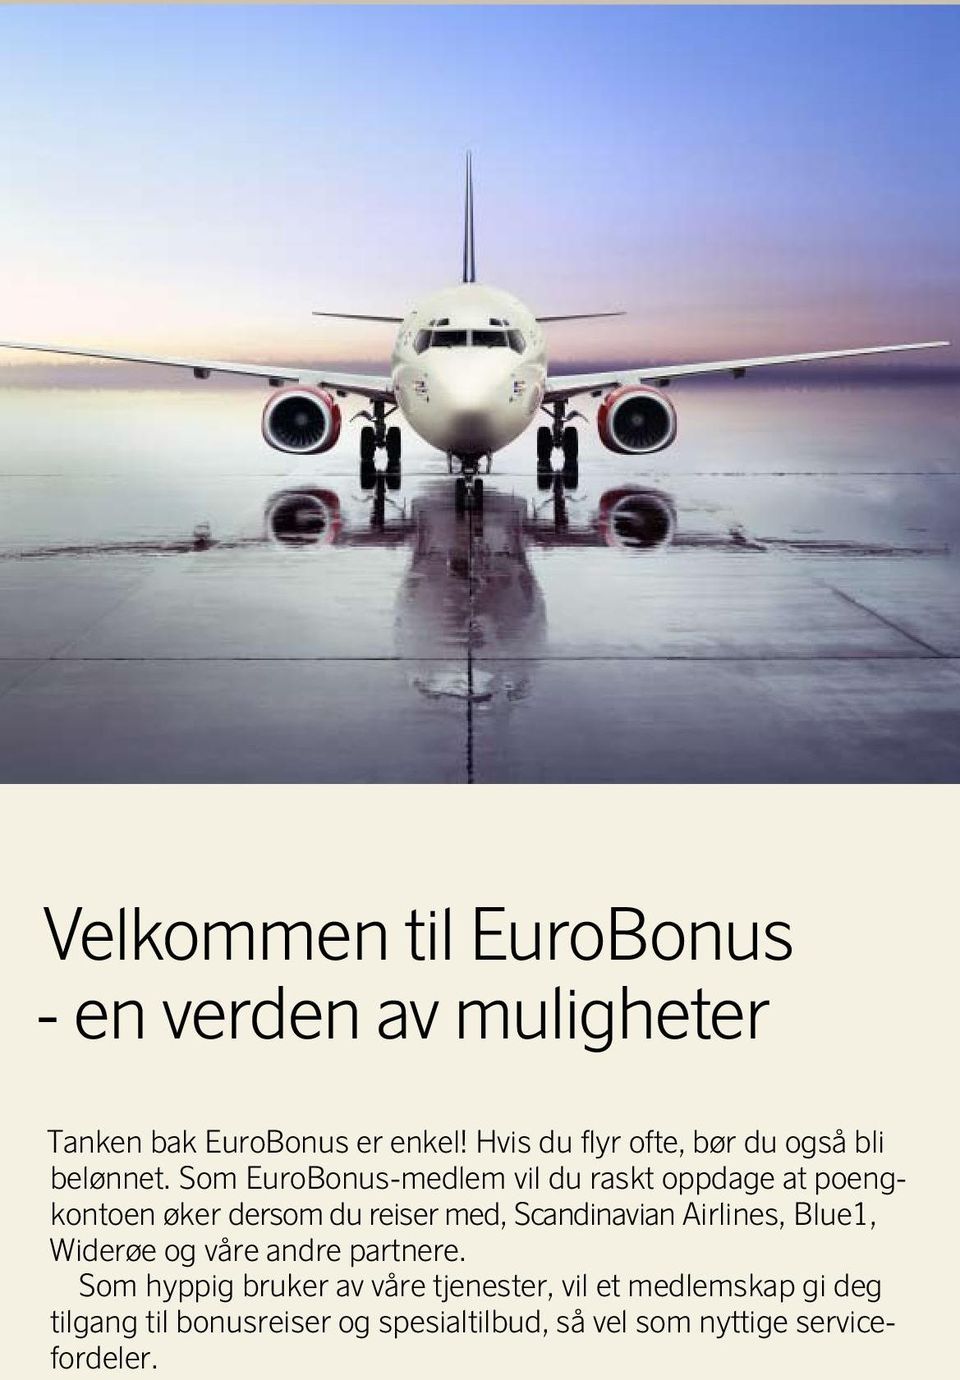 Som EuroBonus-medlem vil du raskt oppdage at poengkontoen øker dersom du reiser med, Scandinavian